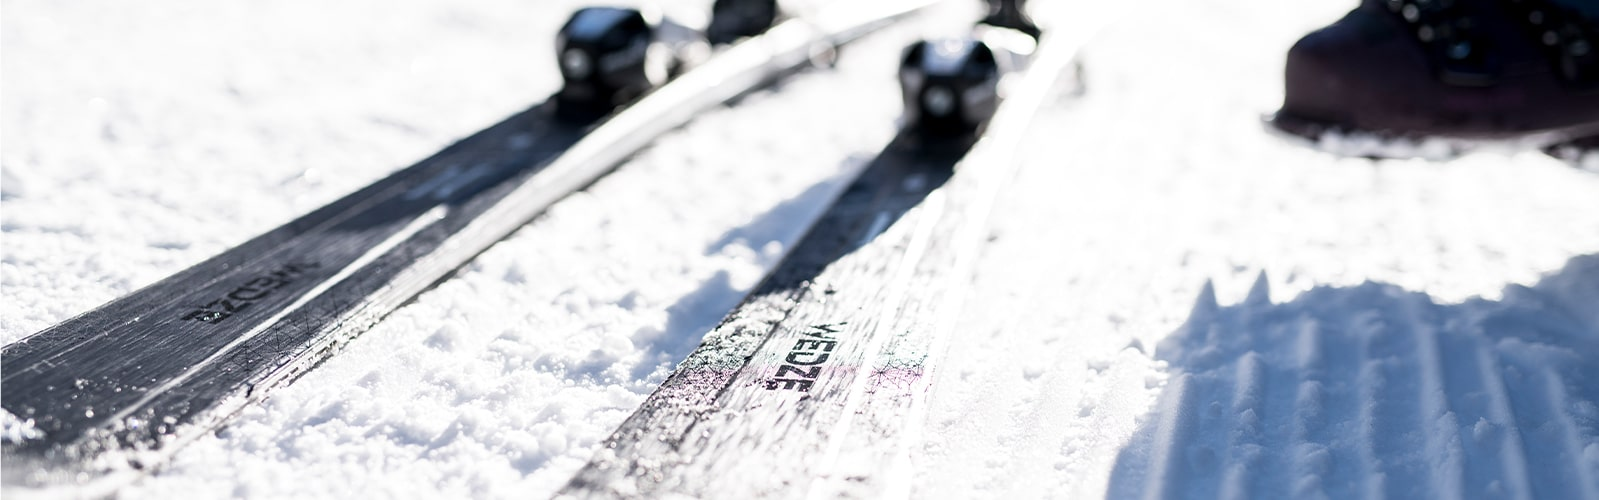 整備されたゲレンデスノーにスキー板